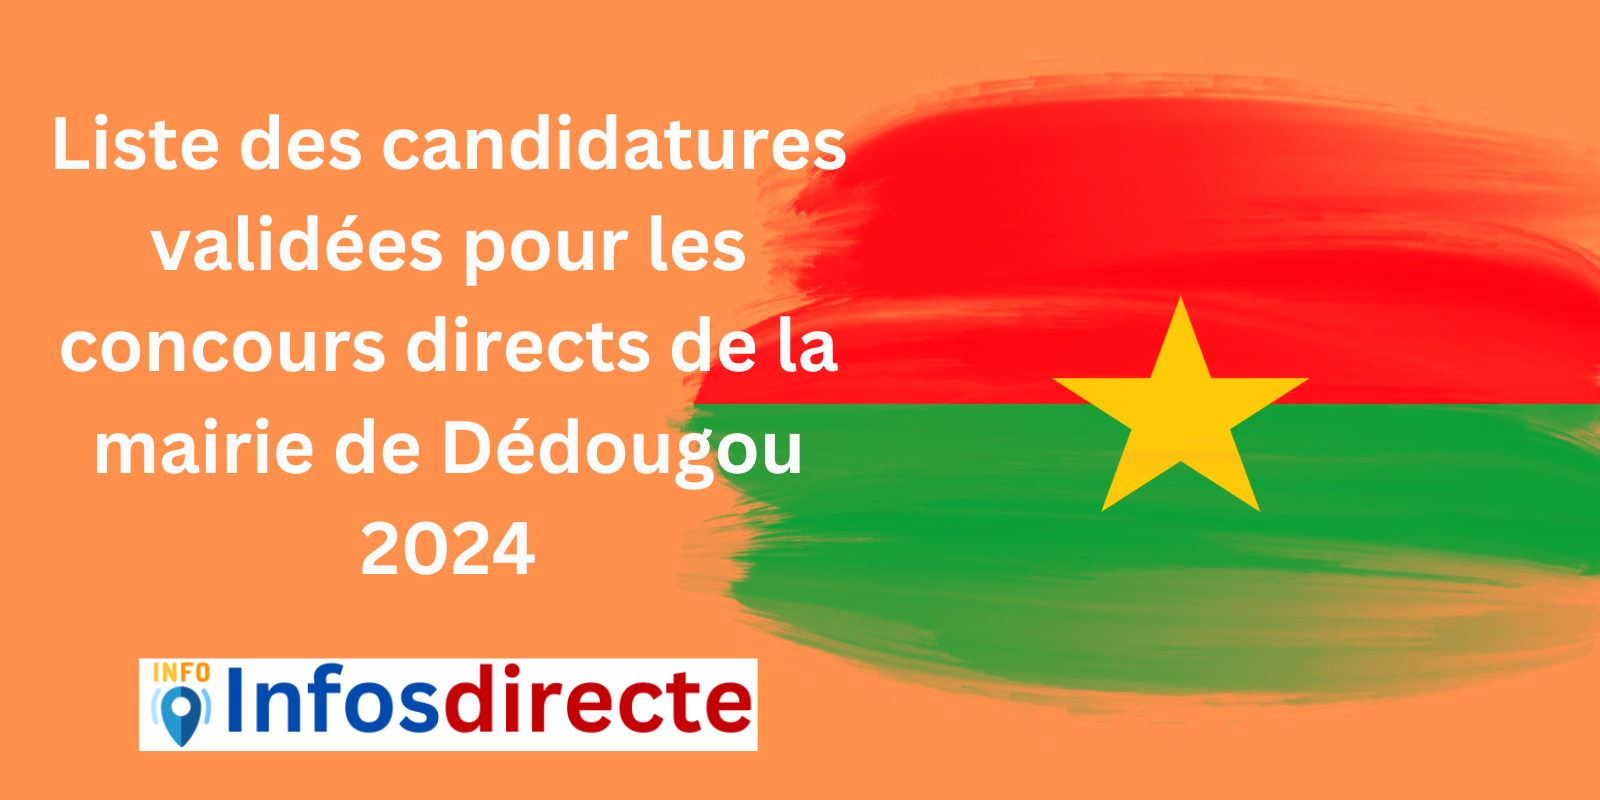 Liste des candidatures validées pour les concours directs de la mairie de Dédougou 2024